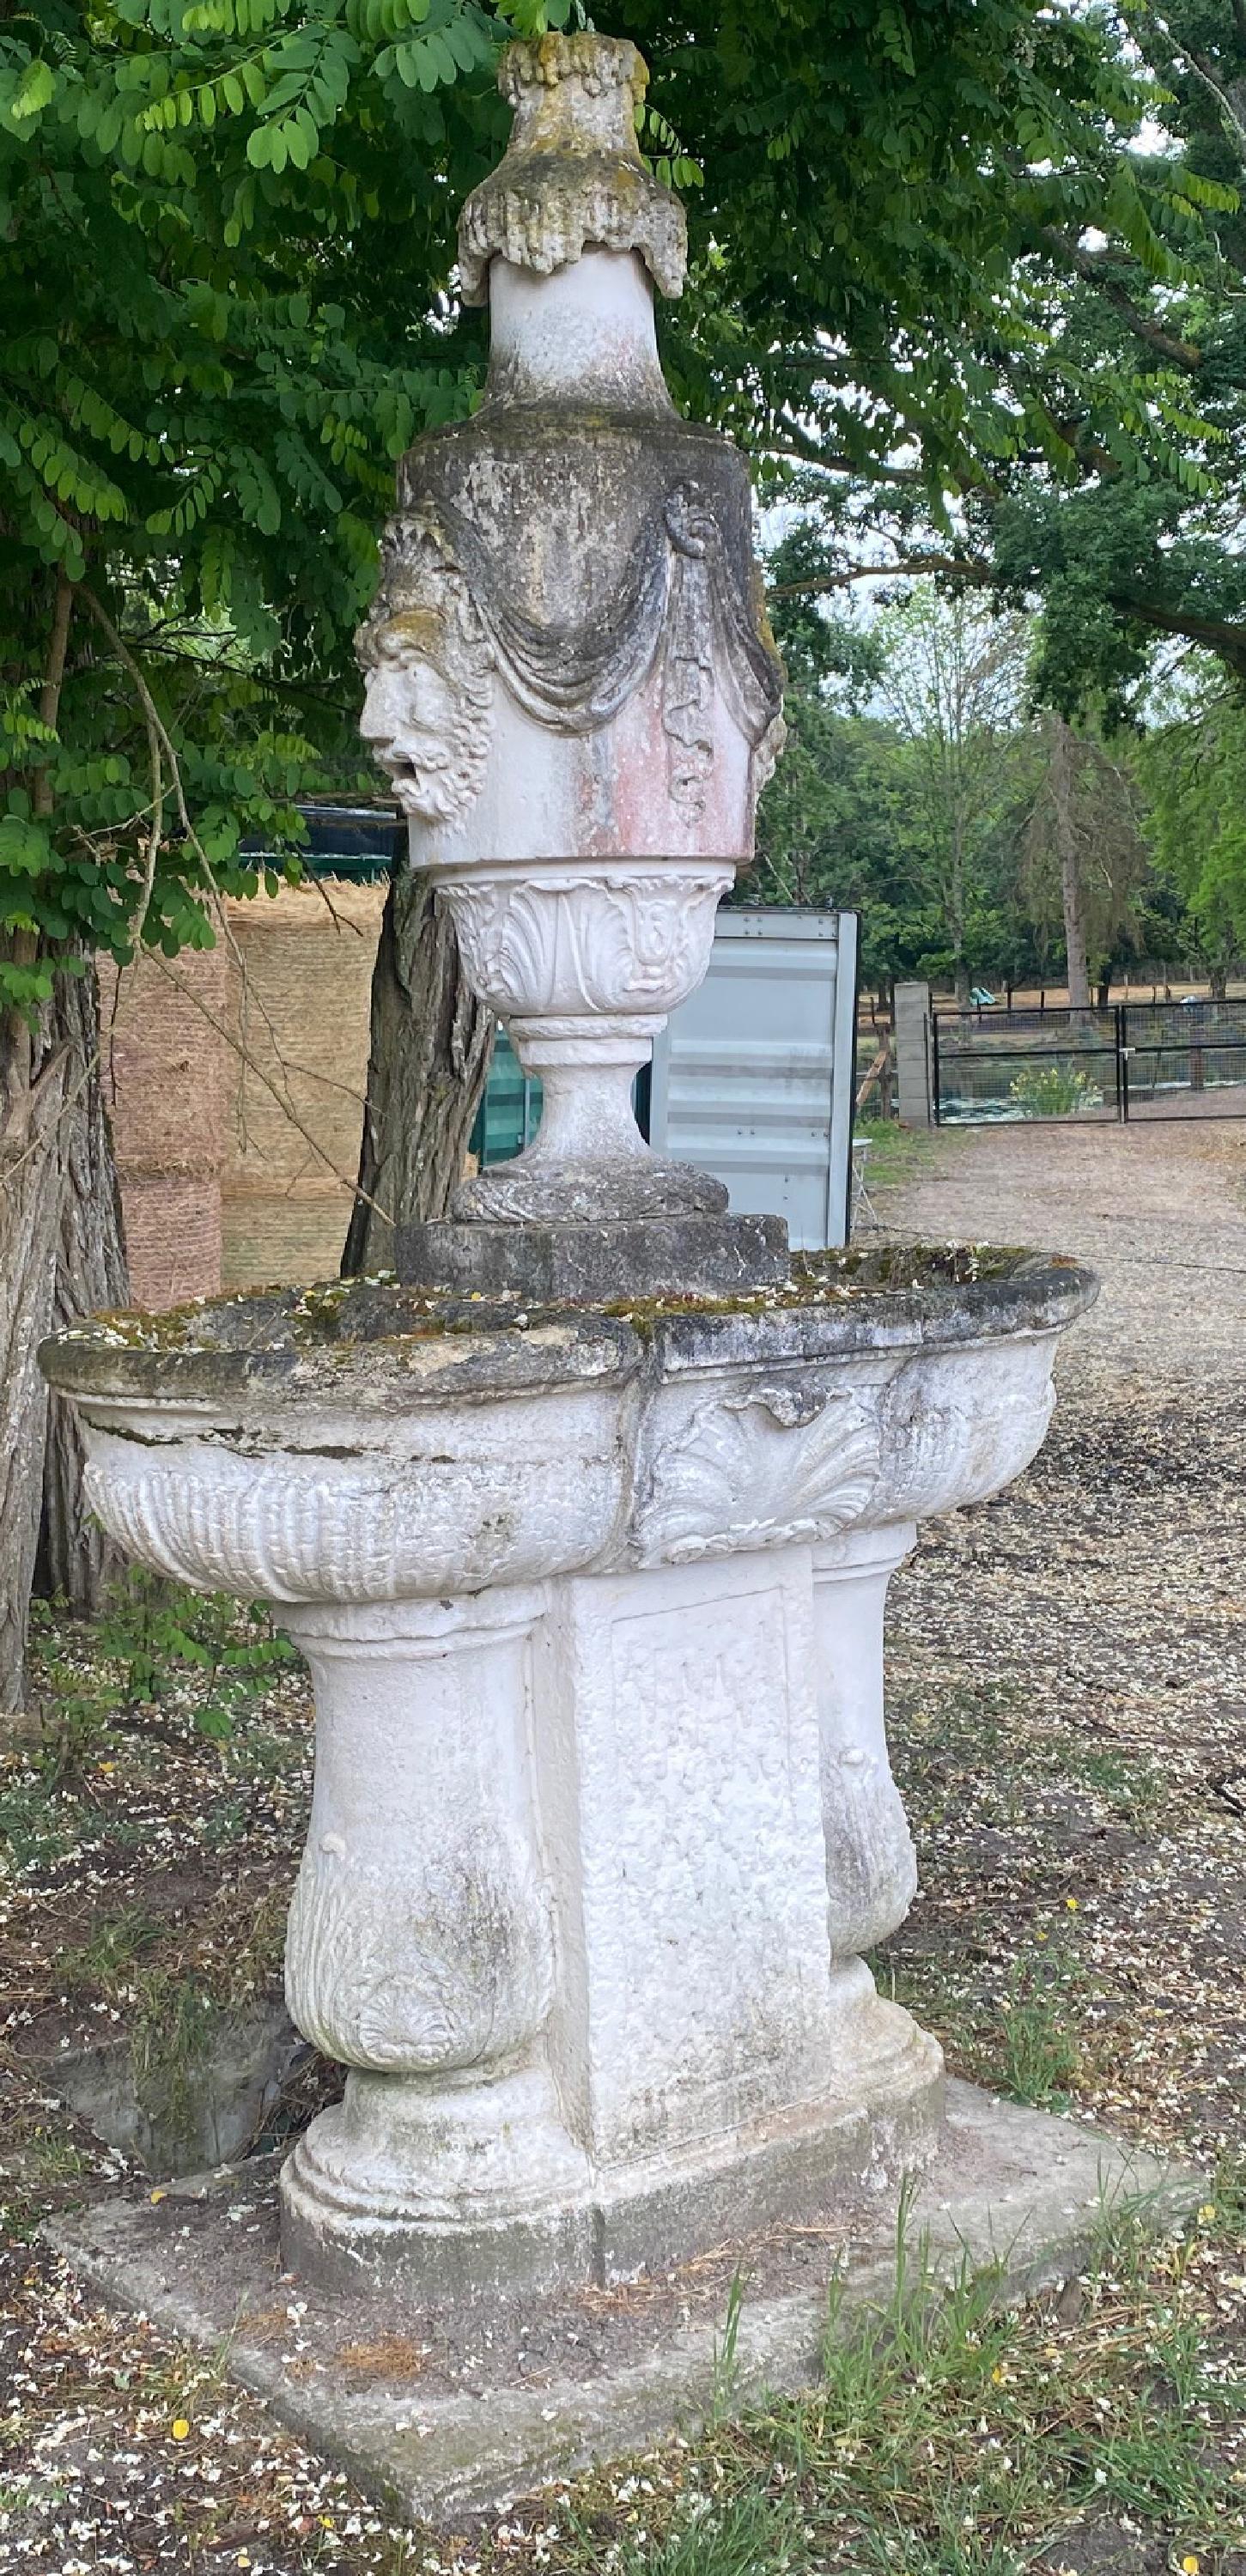 Gartenbrunnen im Regence-Stil mit Doppelbecken aus Stein,
Dieser sehr elegant gestaltete Brunnen kann ein zentraler Punkt sein. Es könnte auf ein Becken in einem größeren Becken gestellt werden.